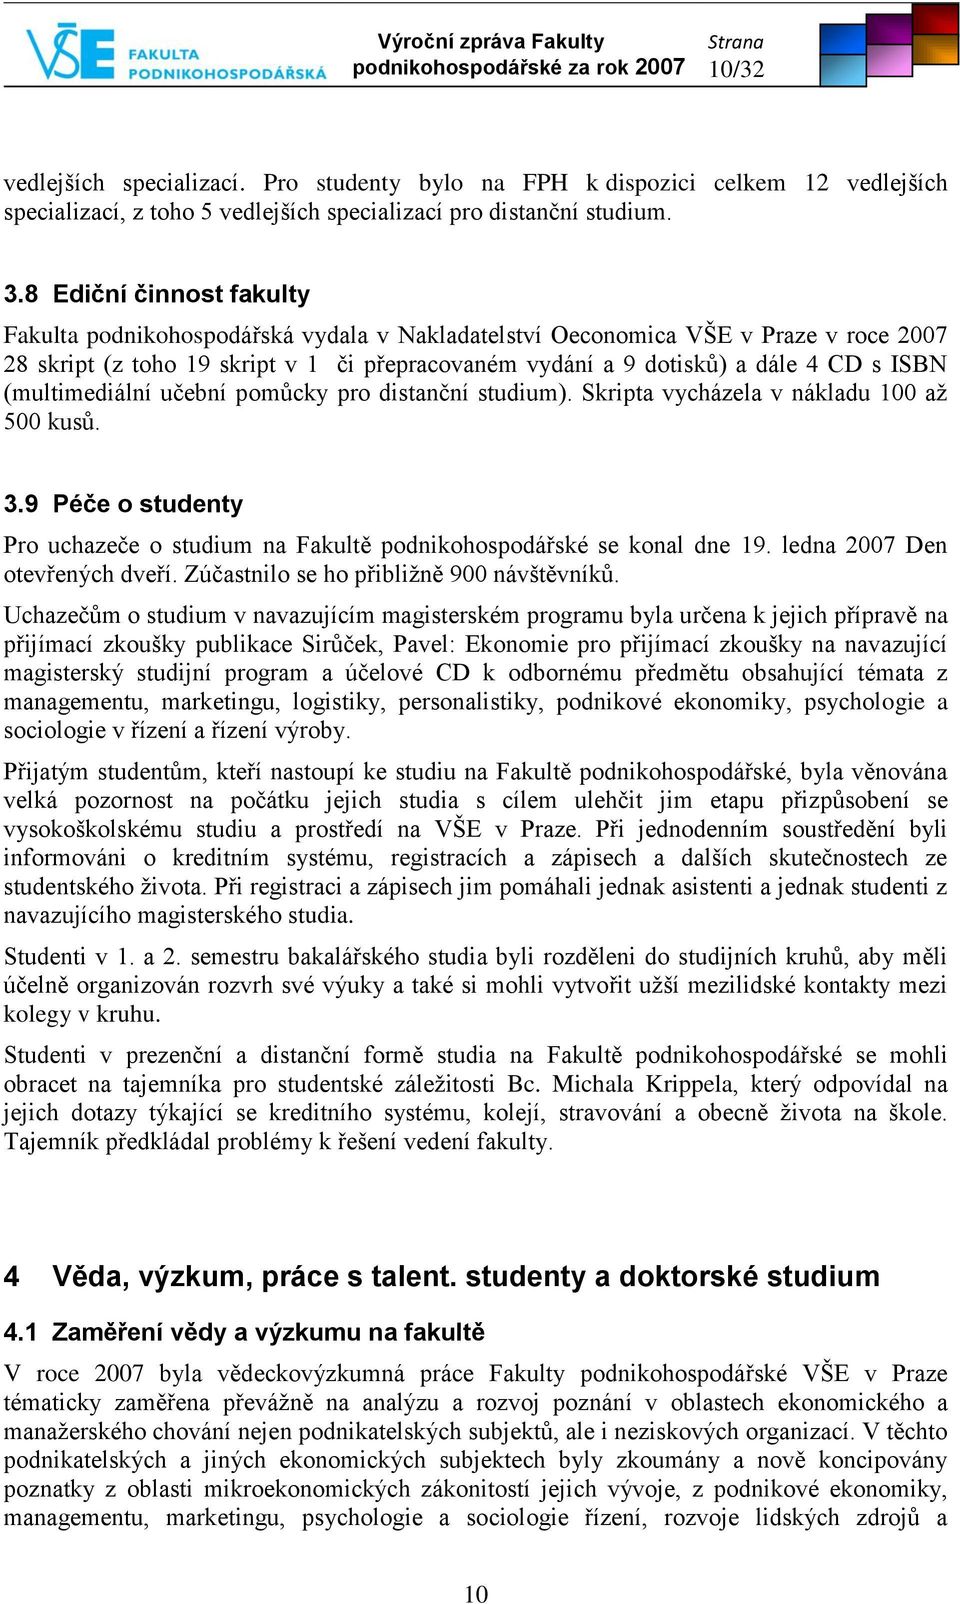 8 Ediční činnost fakulty Fakulta podnikohospodářská vydala v Nakladatelství Oeconomica VŠE v Praze v roce 2007 28 skript (z toho 19 skript v 1 či přepracovaném vydání a 9 dotisků) a dále 4 CD s ISBN